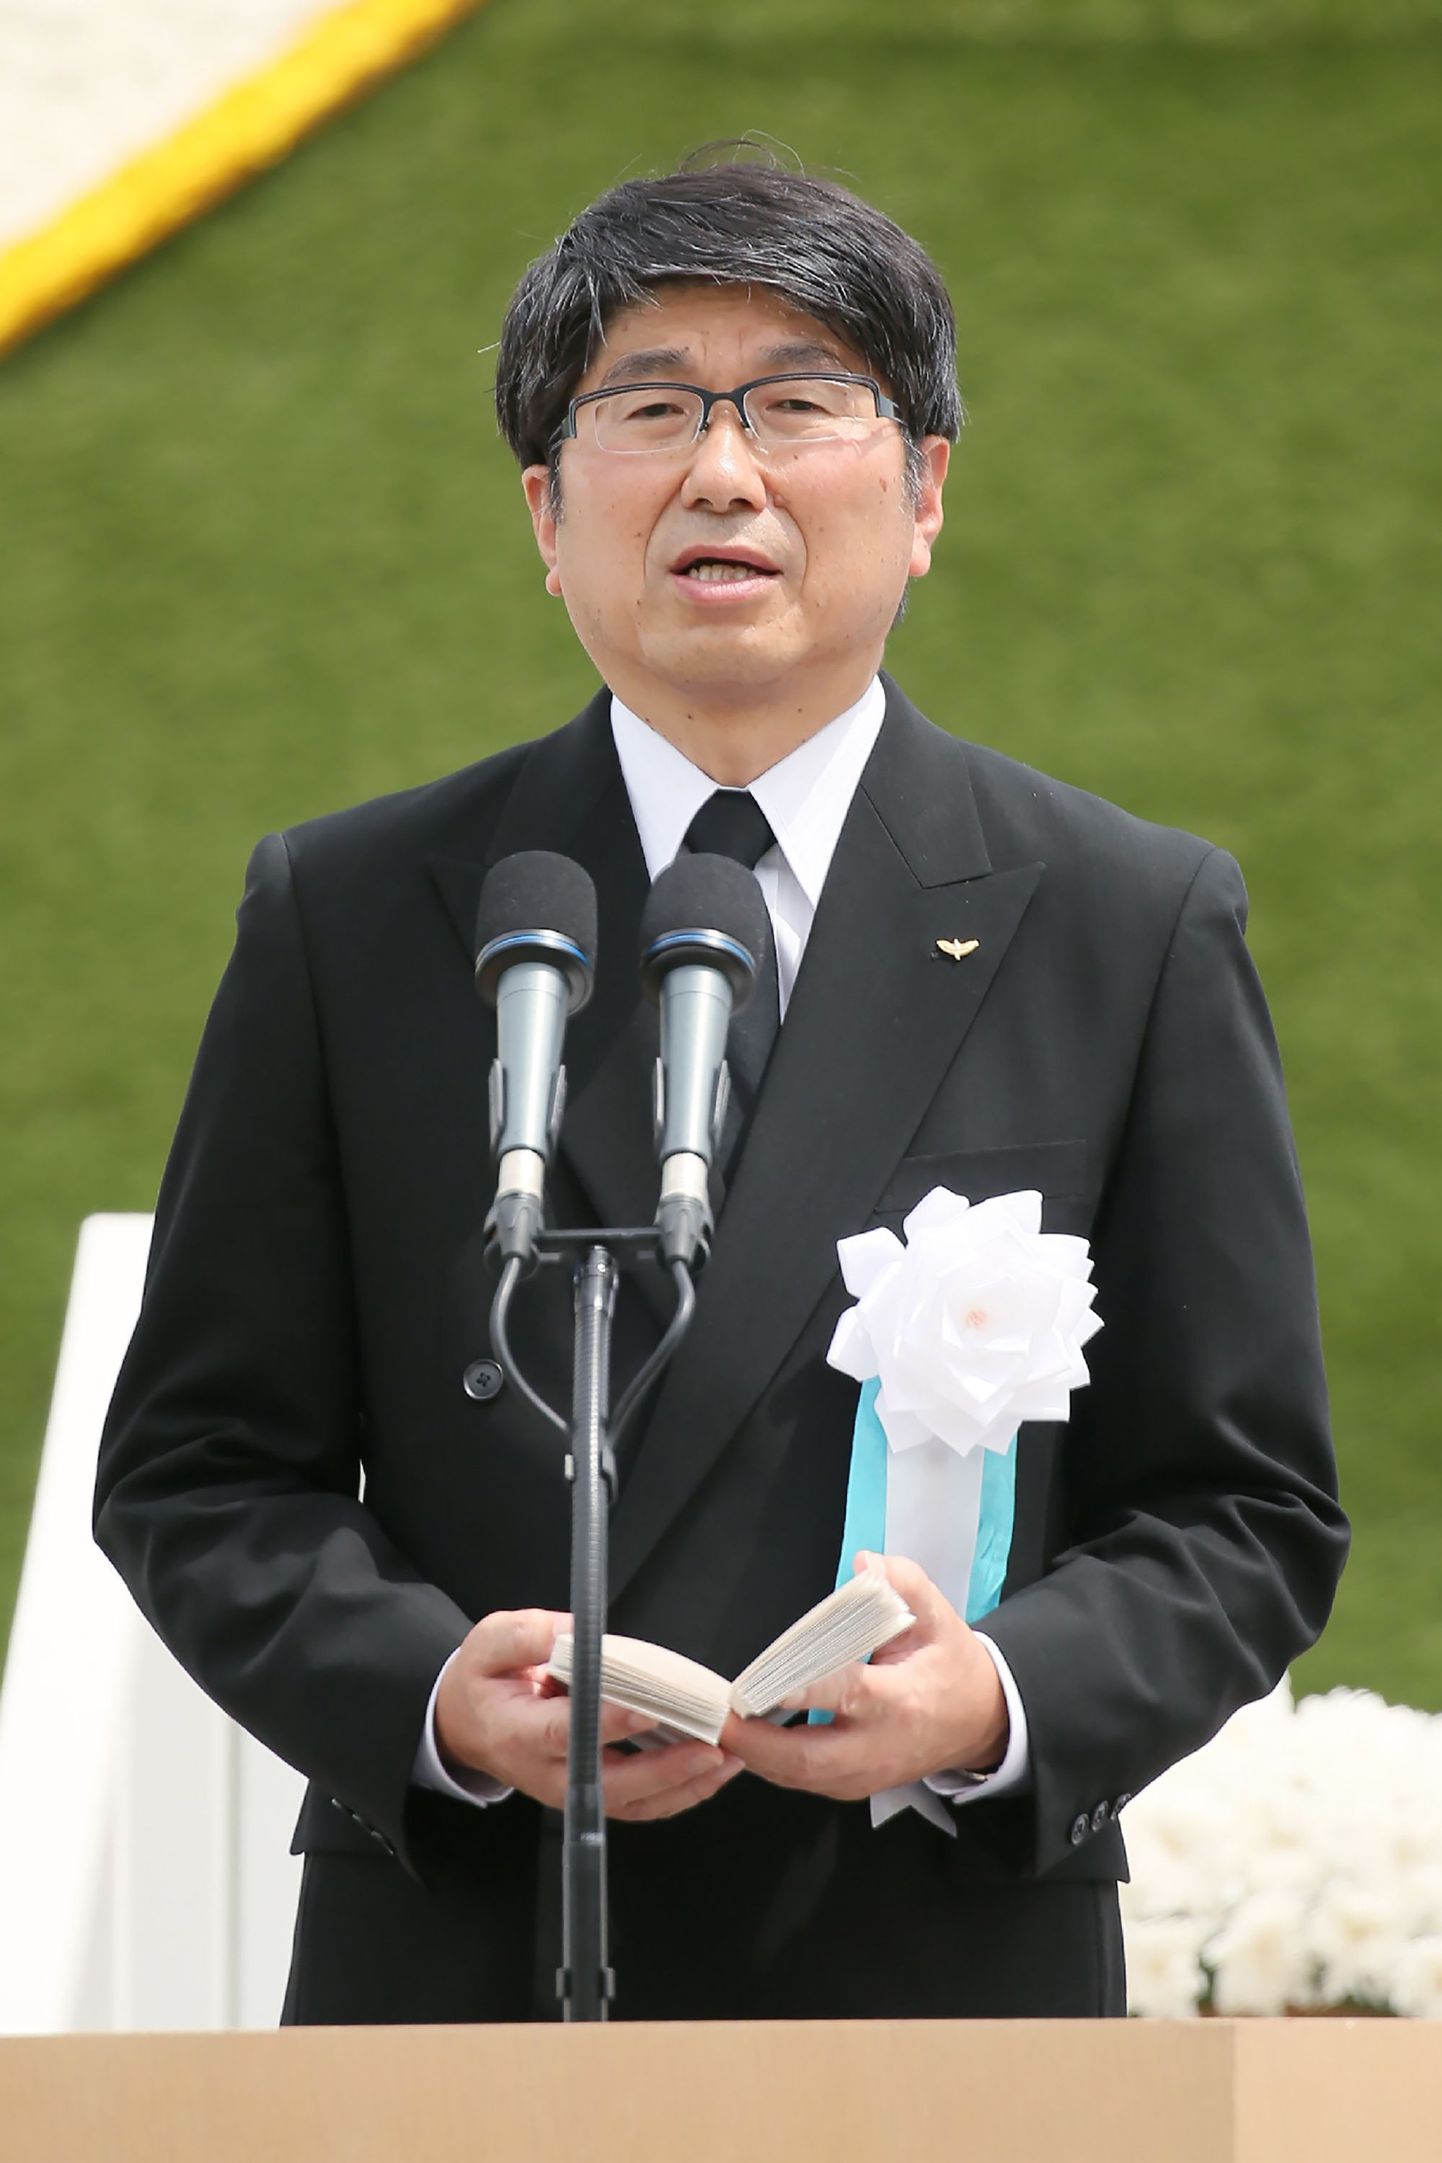 Nagasaki linnapea Tomihisa Taue reedel linna rahupargis tuumarünnaku 74. aastapäeva puhul kõnet pidamas.